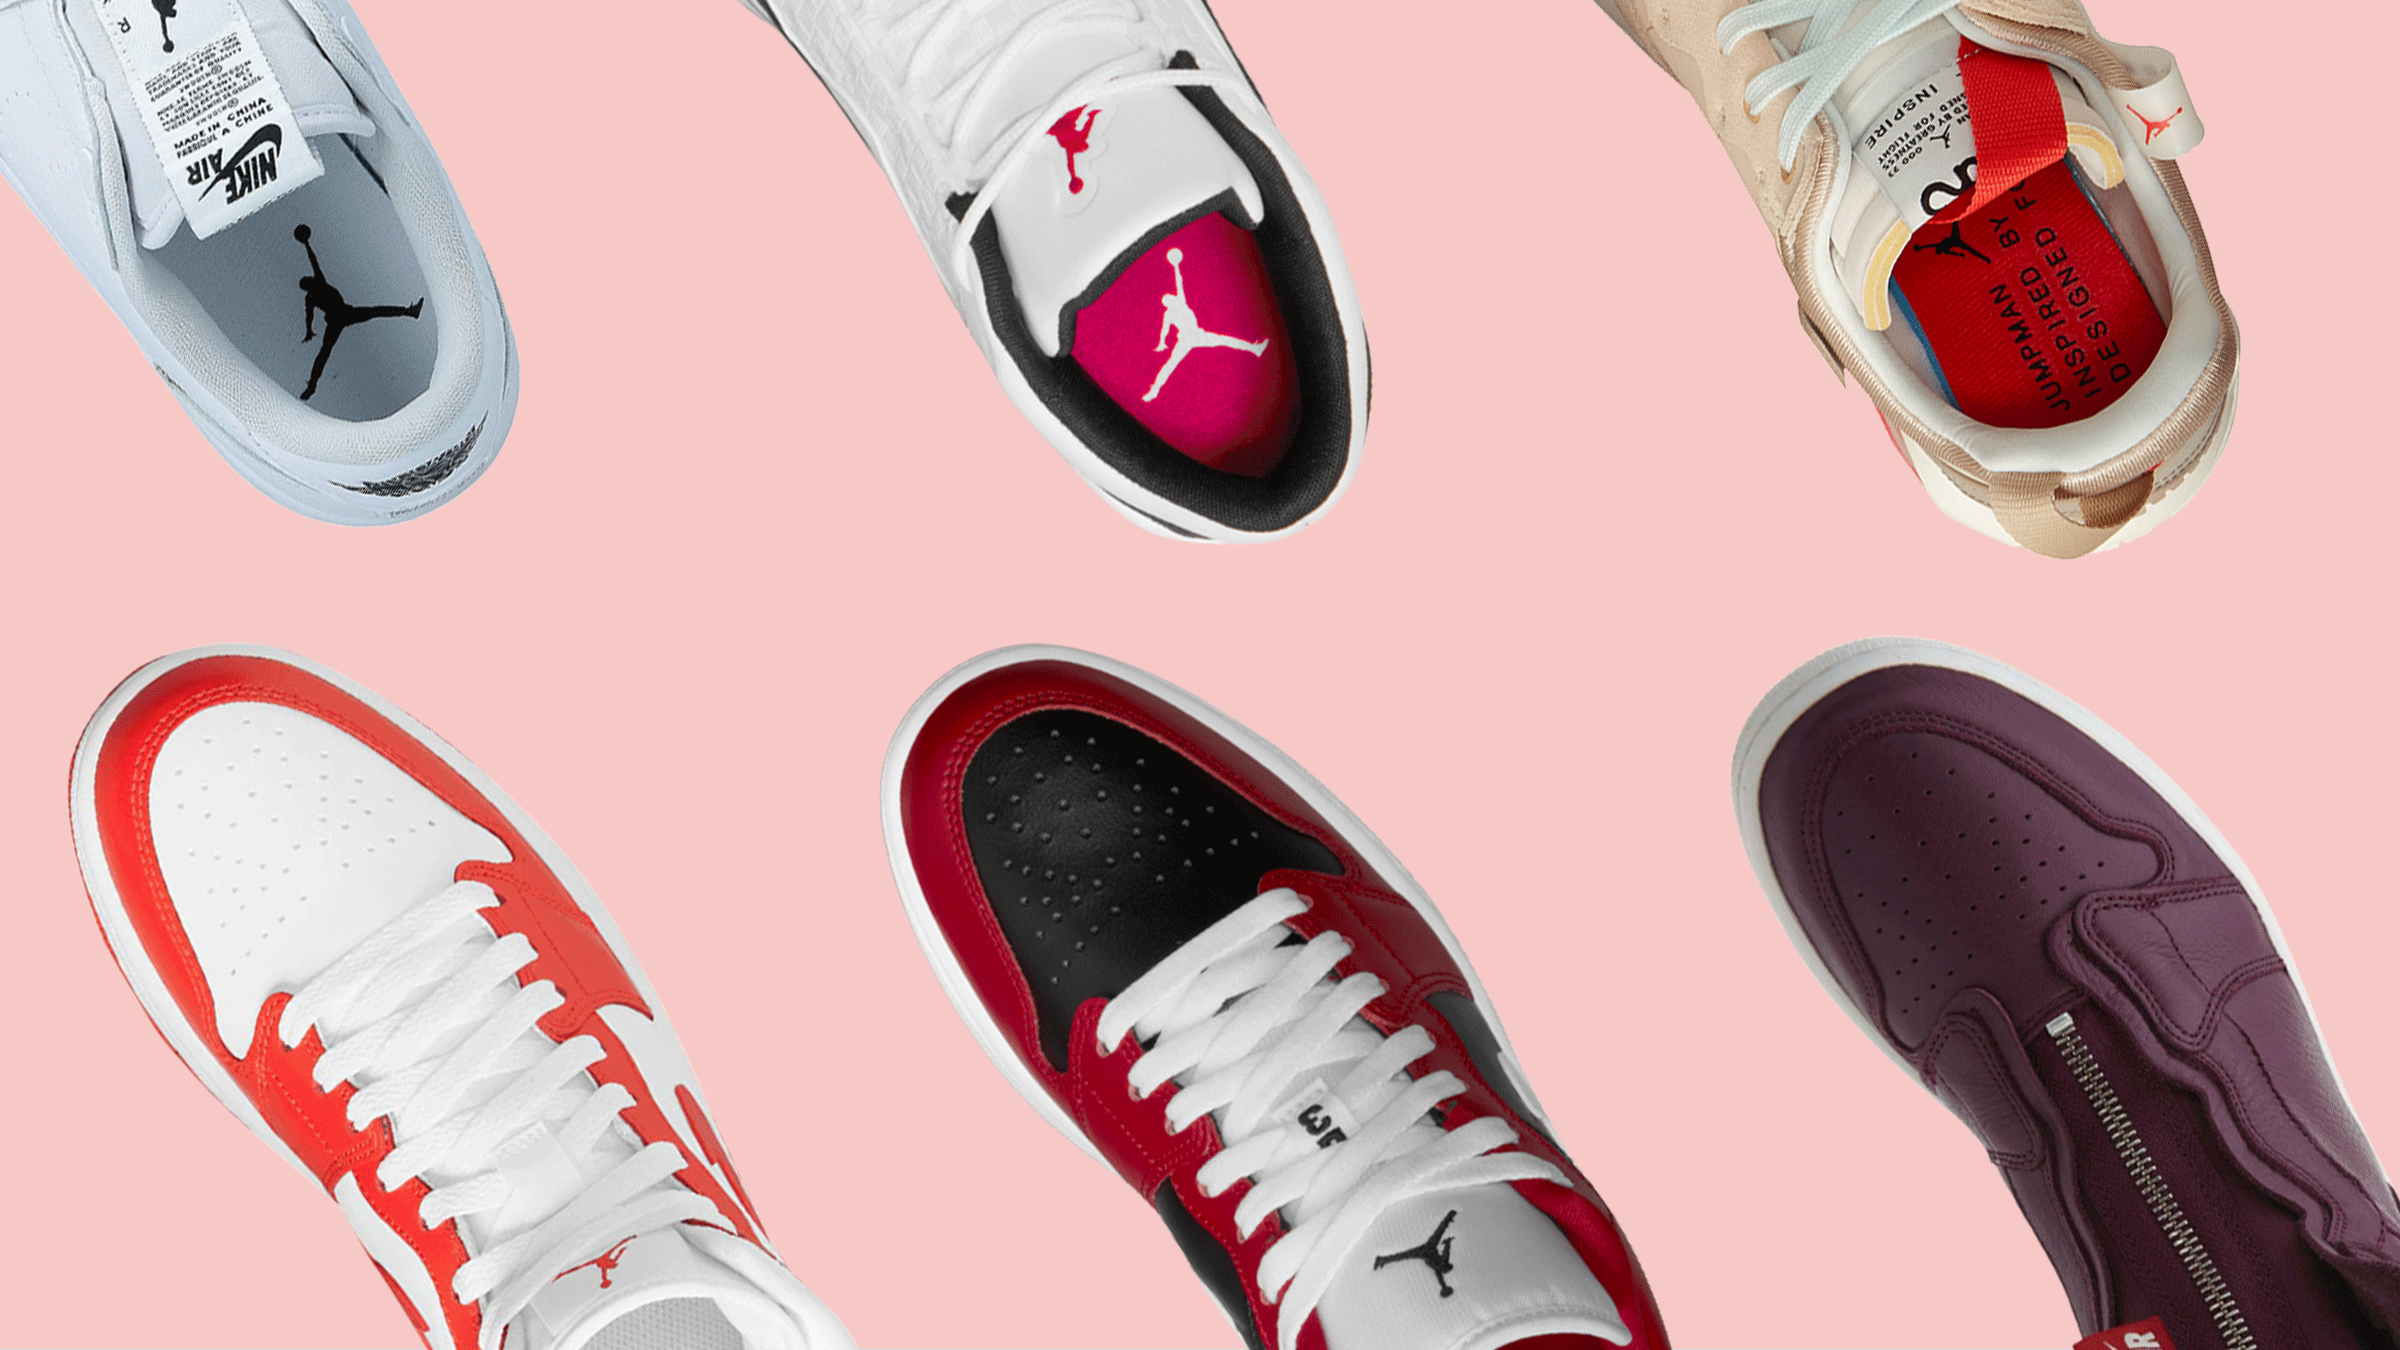 8 Best Jordan Sneakers For Women in 2022